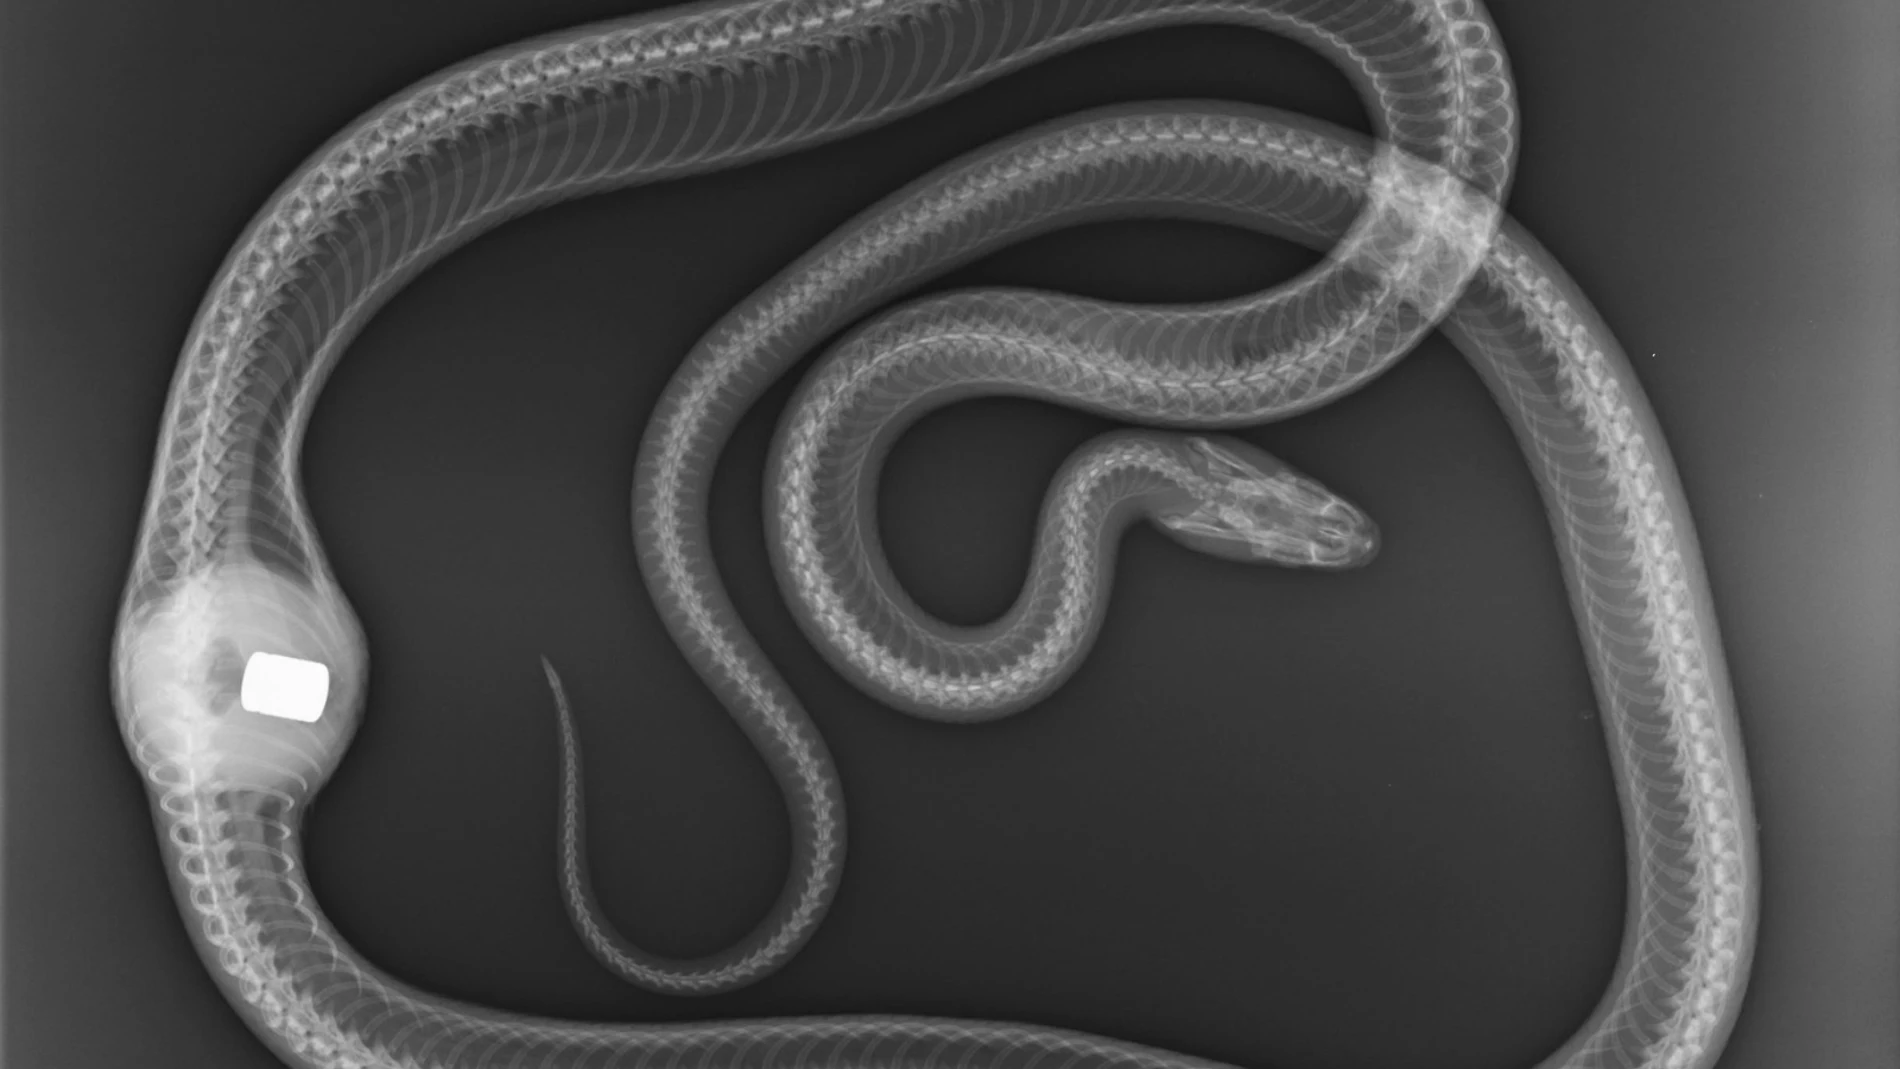 Una serpiente es intervenida quirúrgicamente 